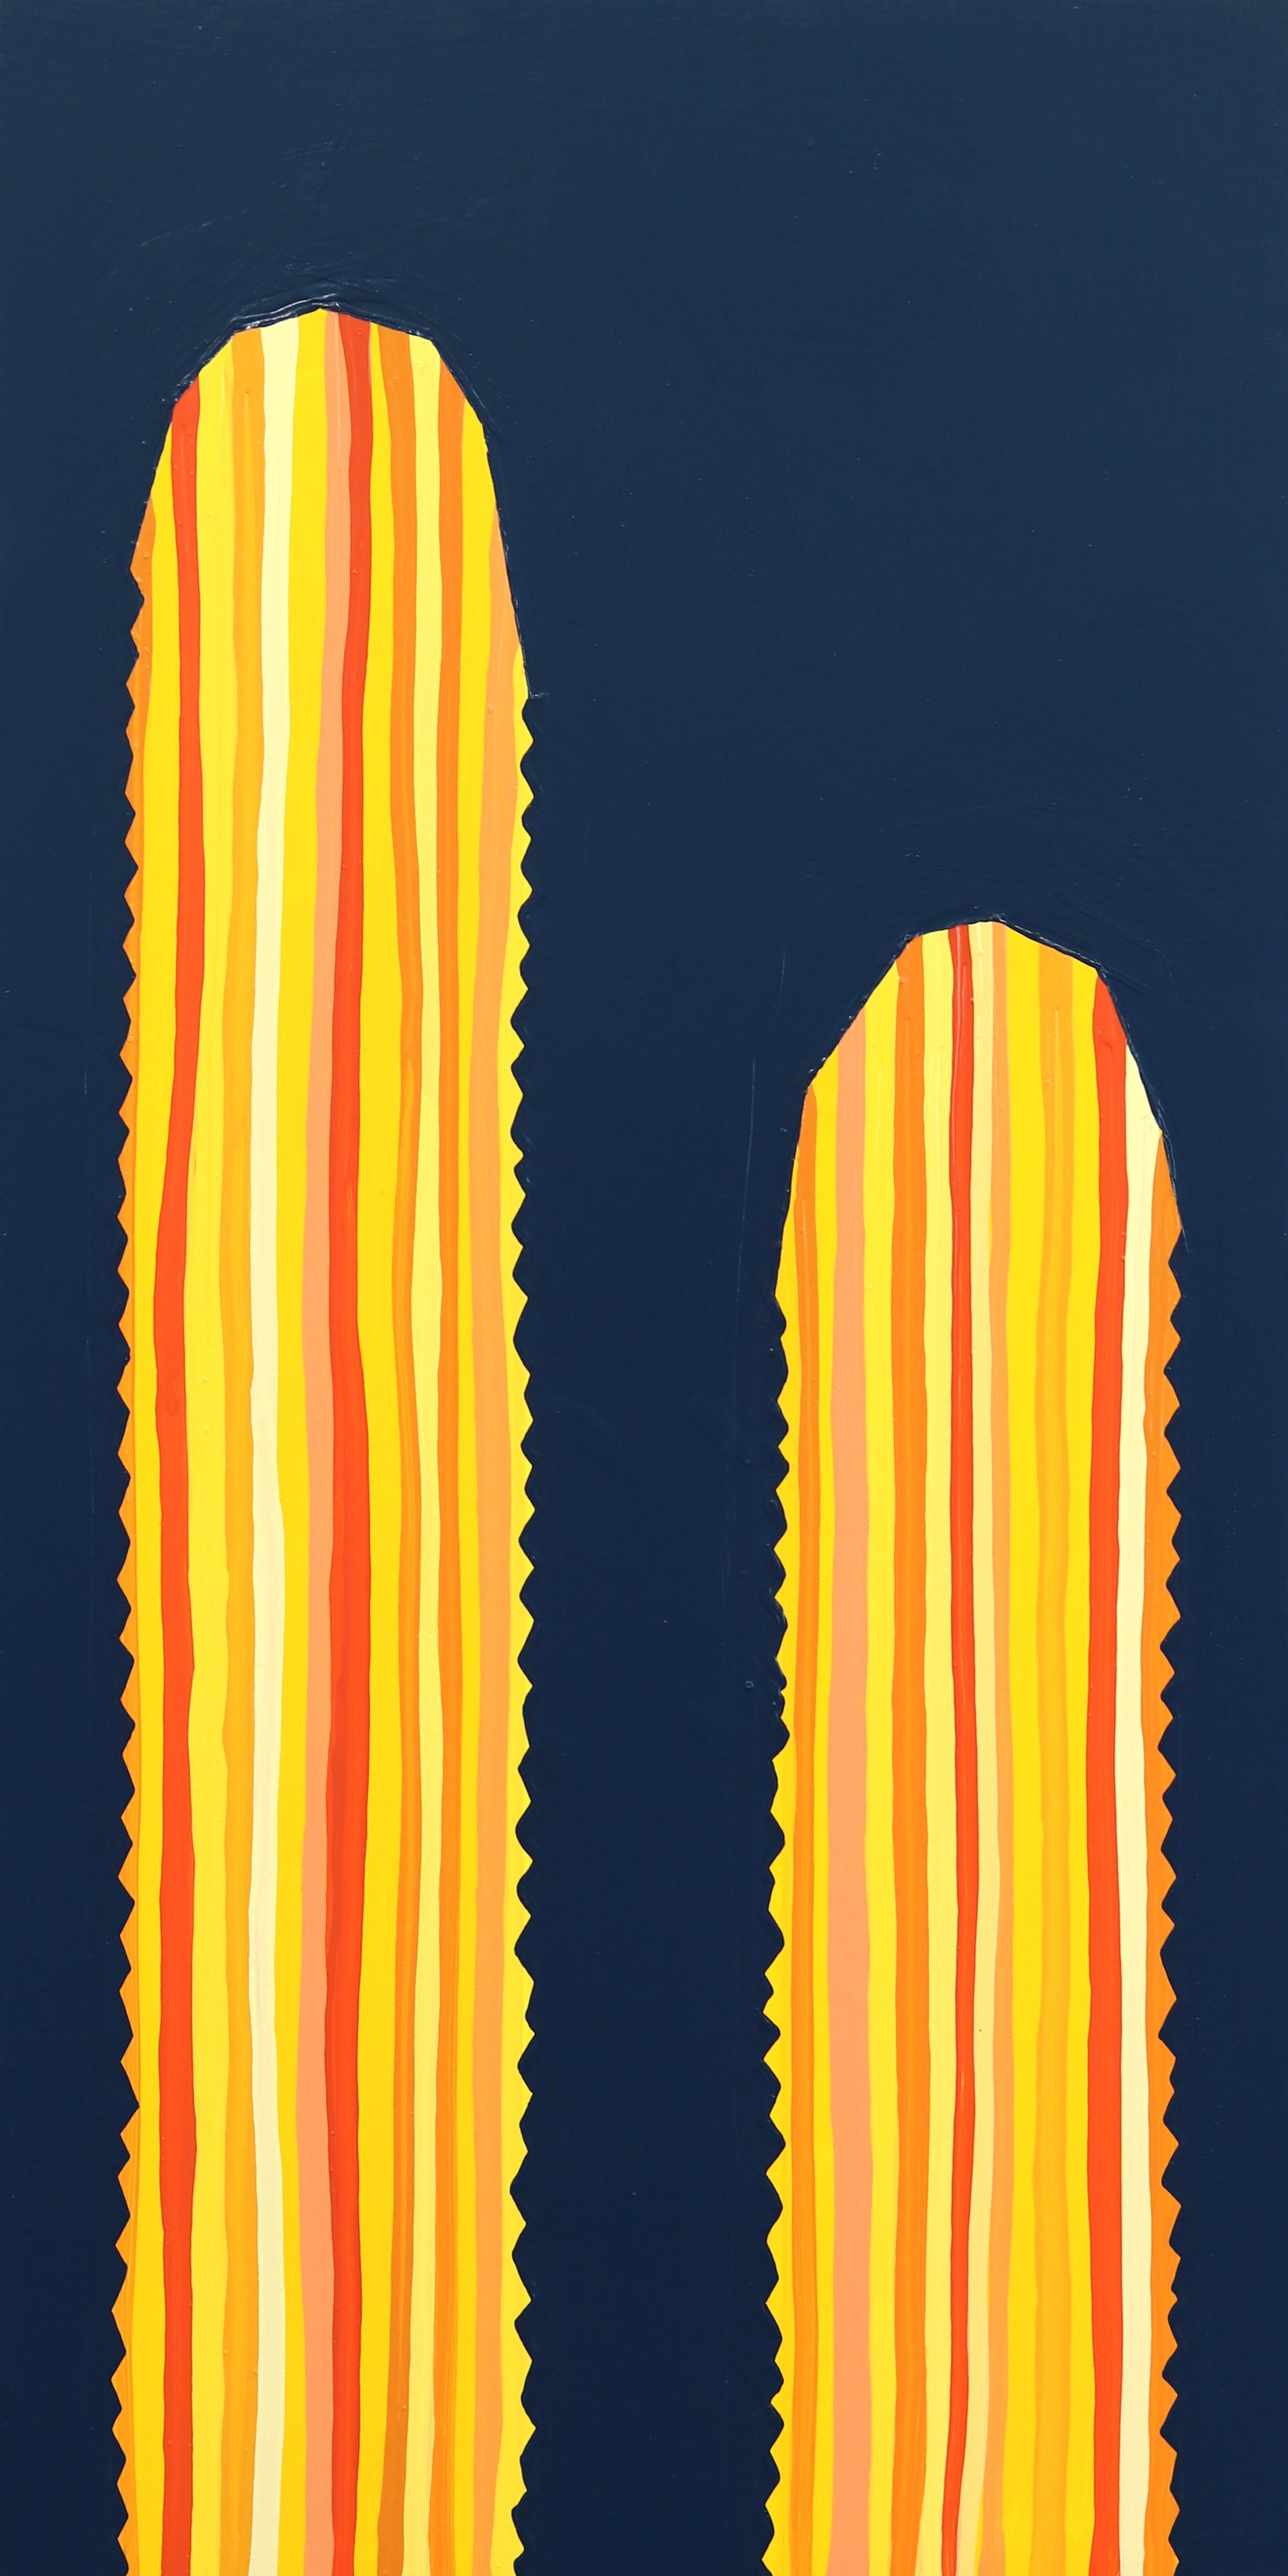 Figurative Painting Will Beger - Illuminer - Peinture pop art de cactus, jaune et bleu, inspirée du sud-ouest